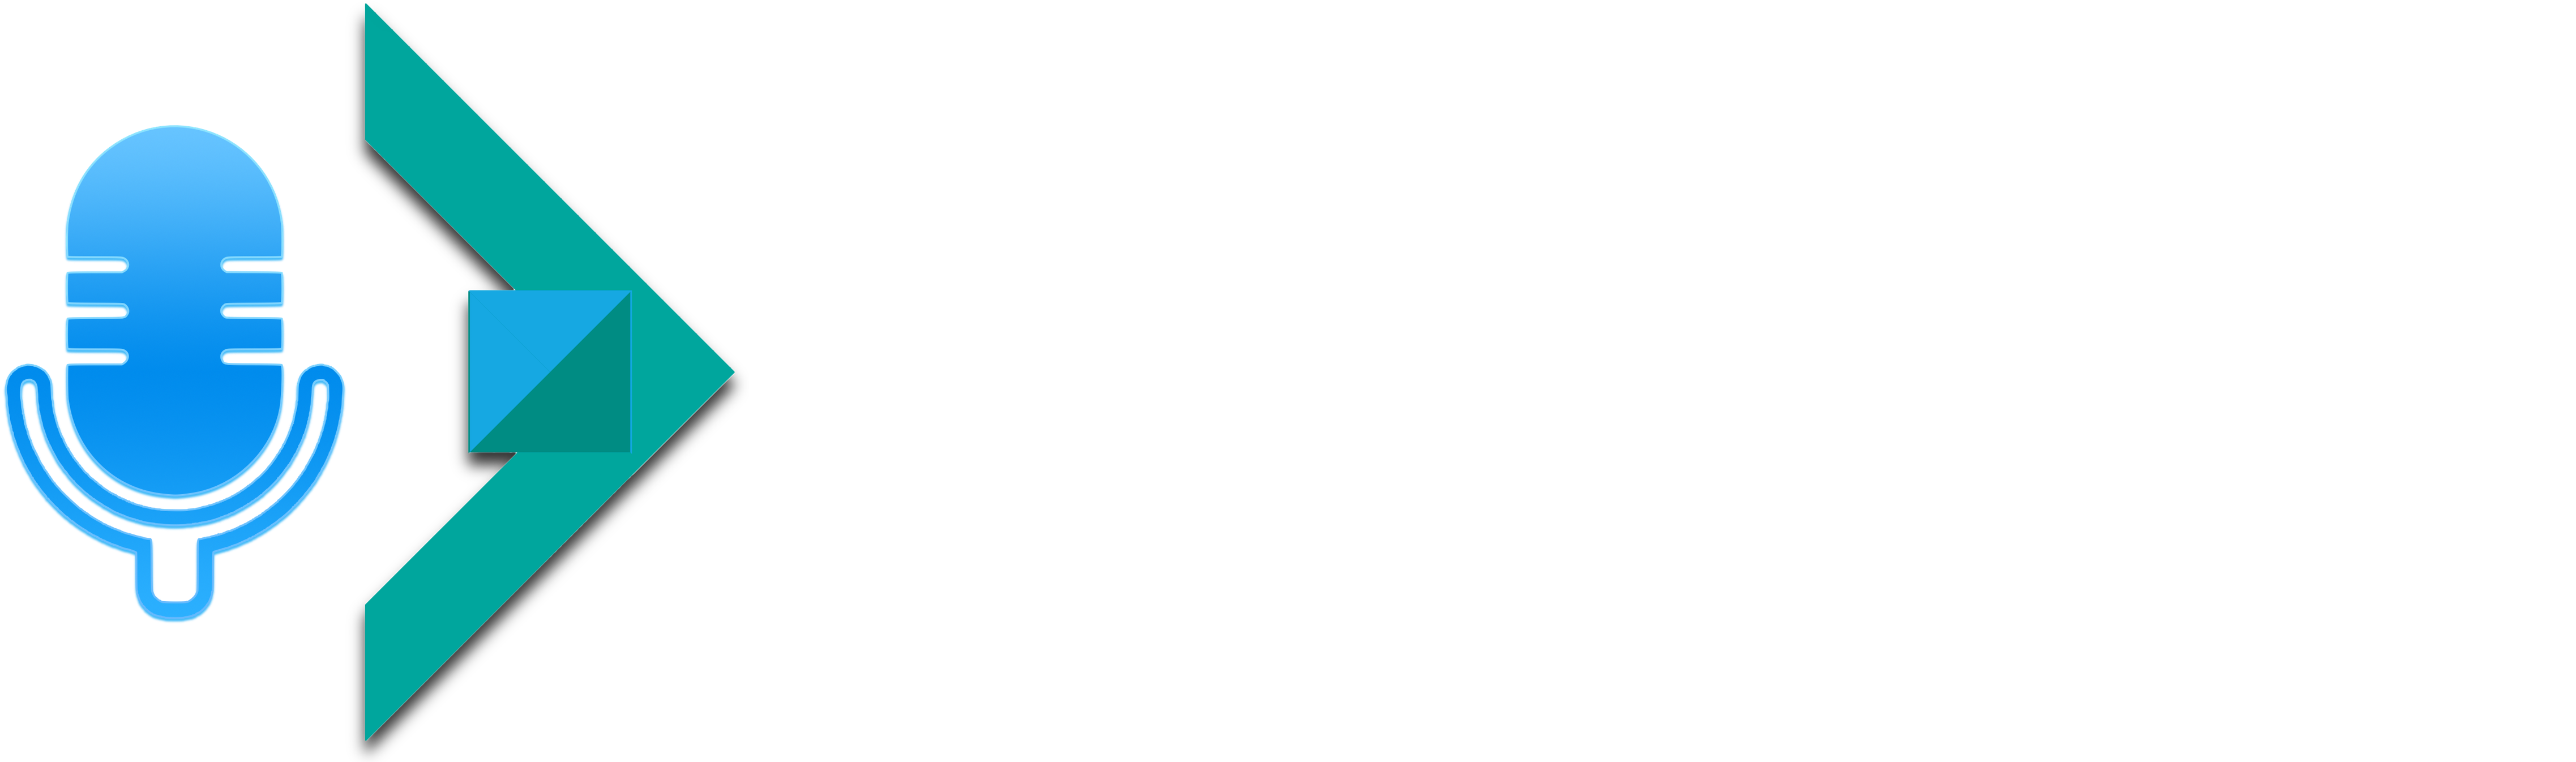 Tech Career Podcast